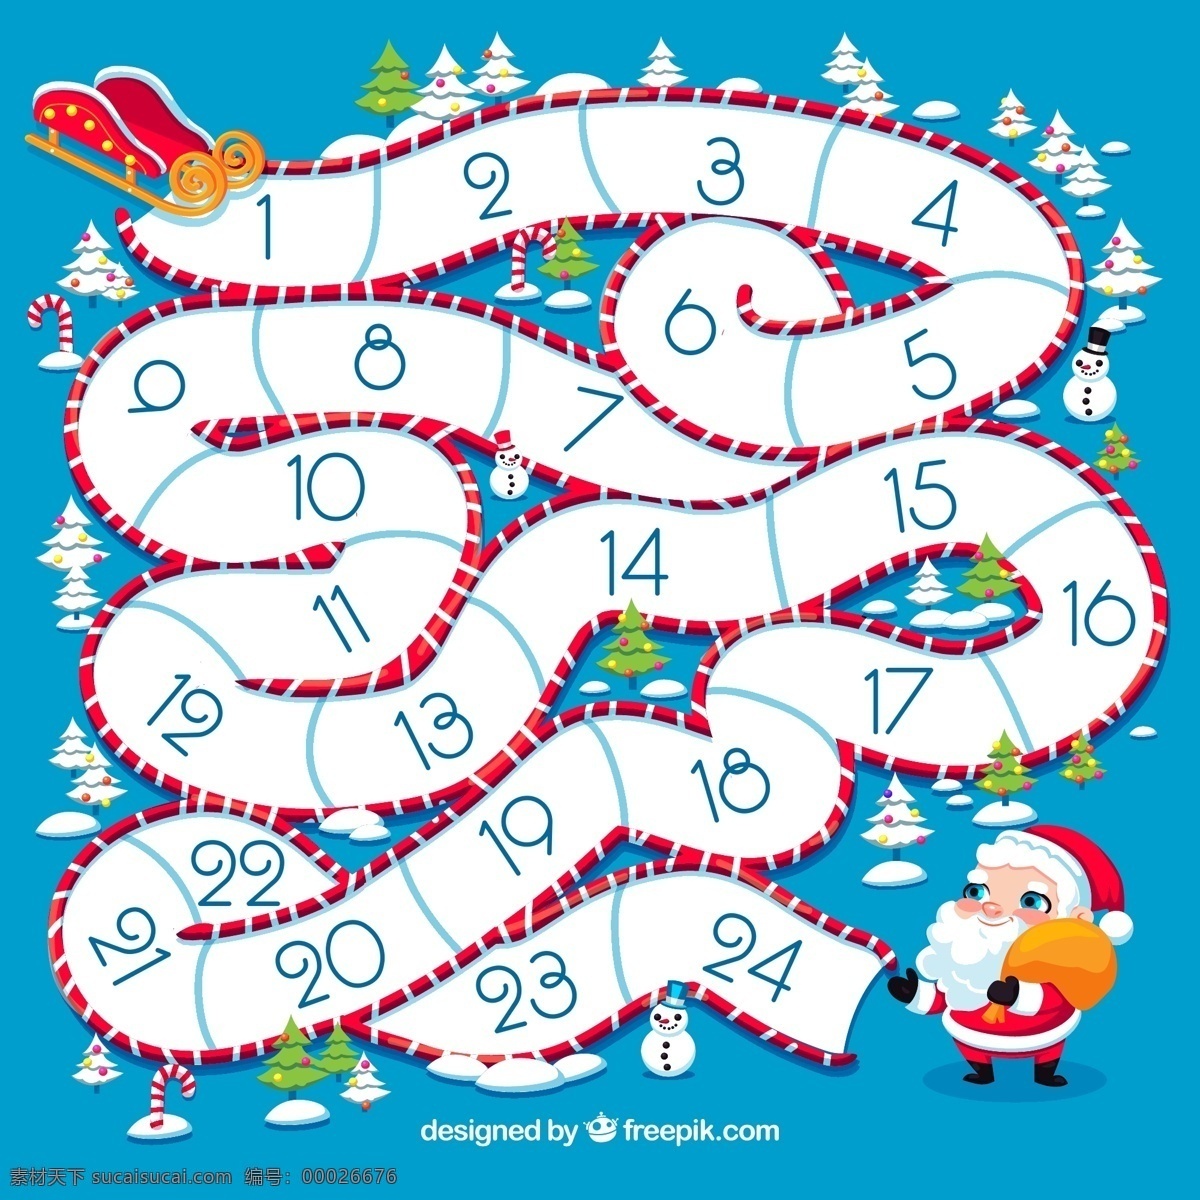 创意 圣诞老人 迷宫 月历 矢量图 圣诞节 数字 雪花 雪橇